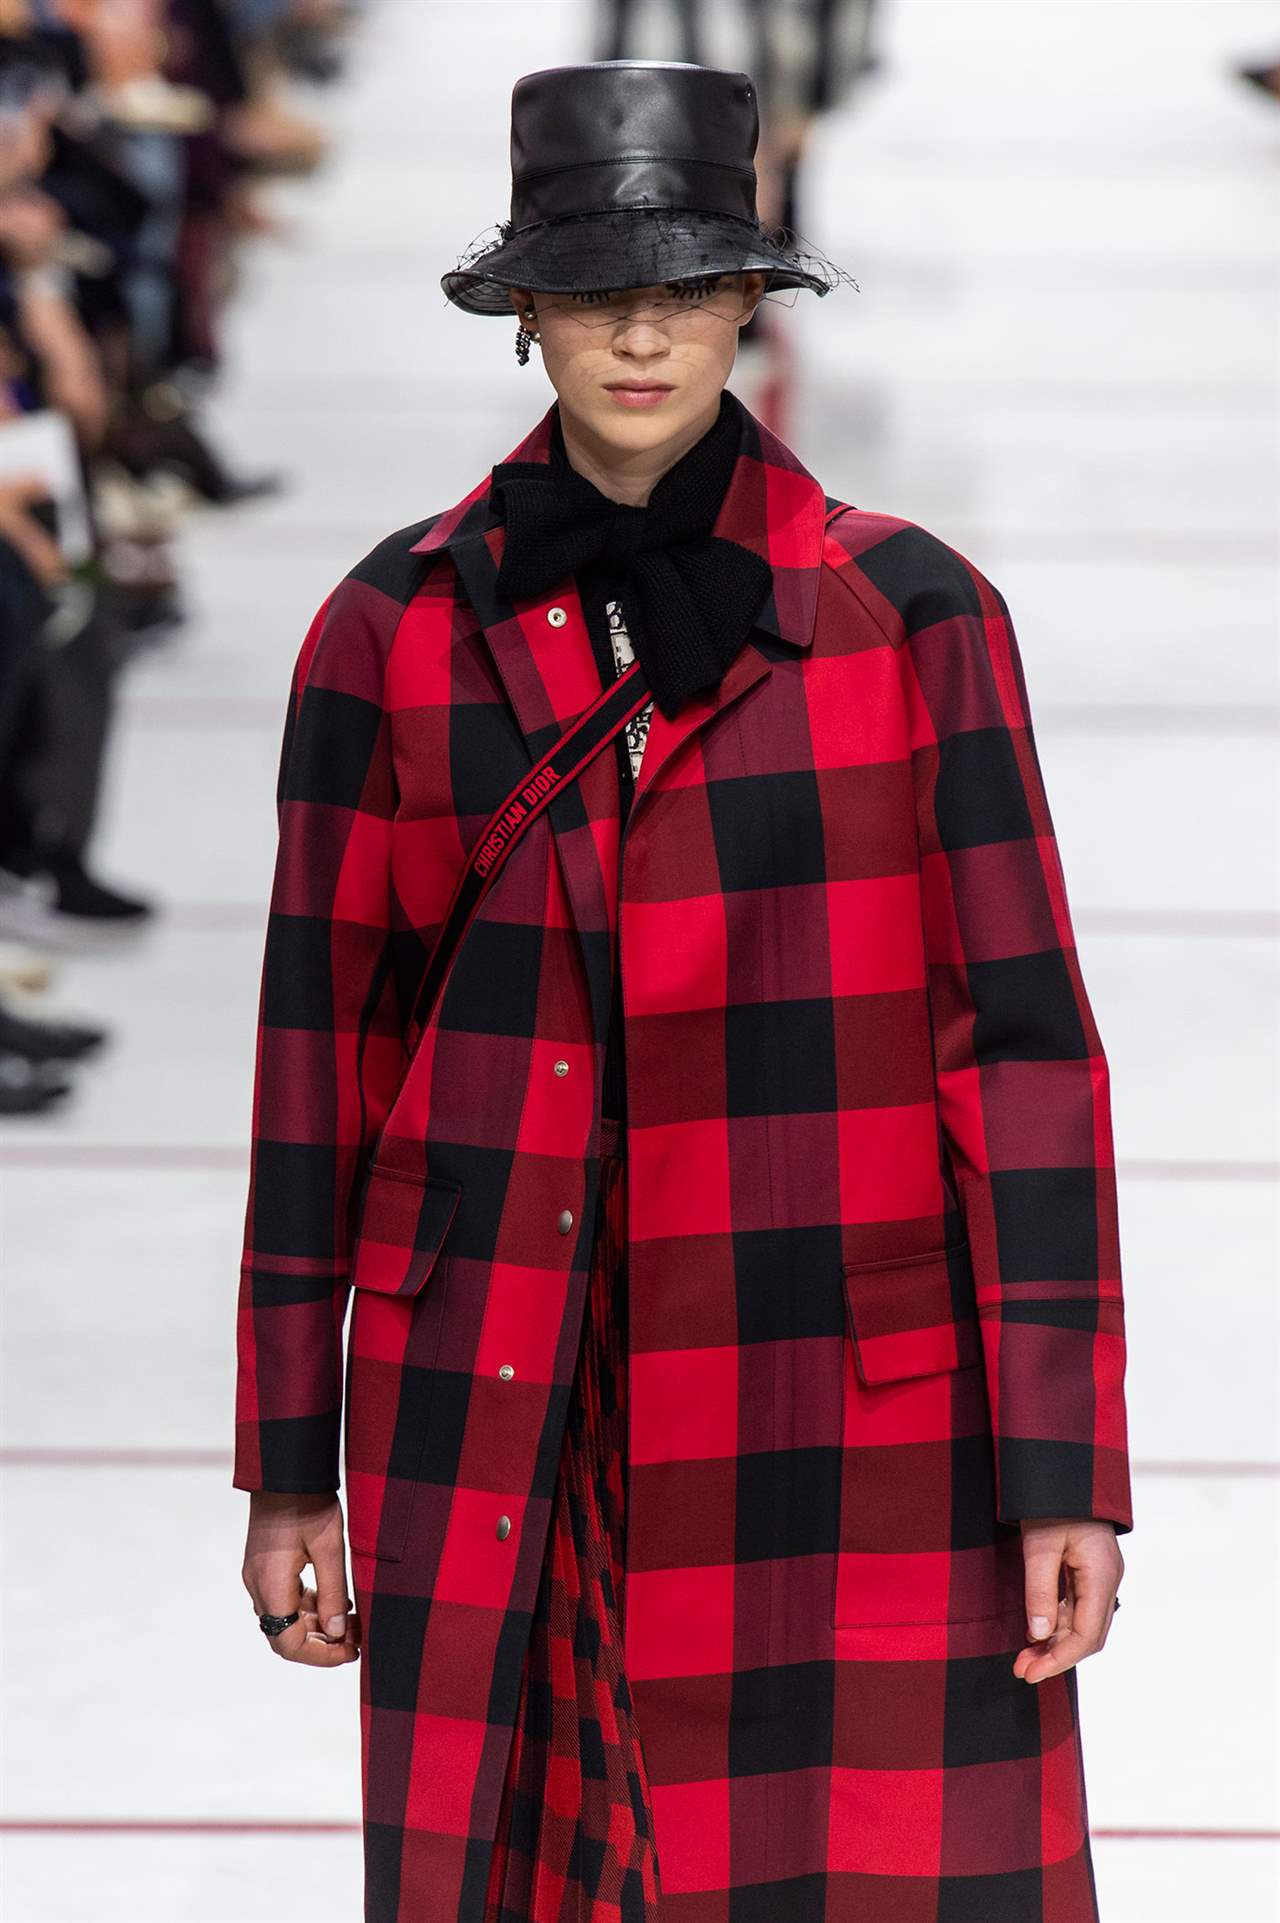 Refrescante once artería Este abrigo que parece de Dior en realidad es de Primark y cuesta solo 40€